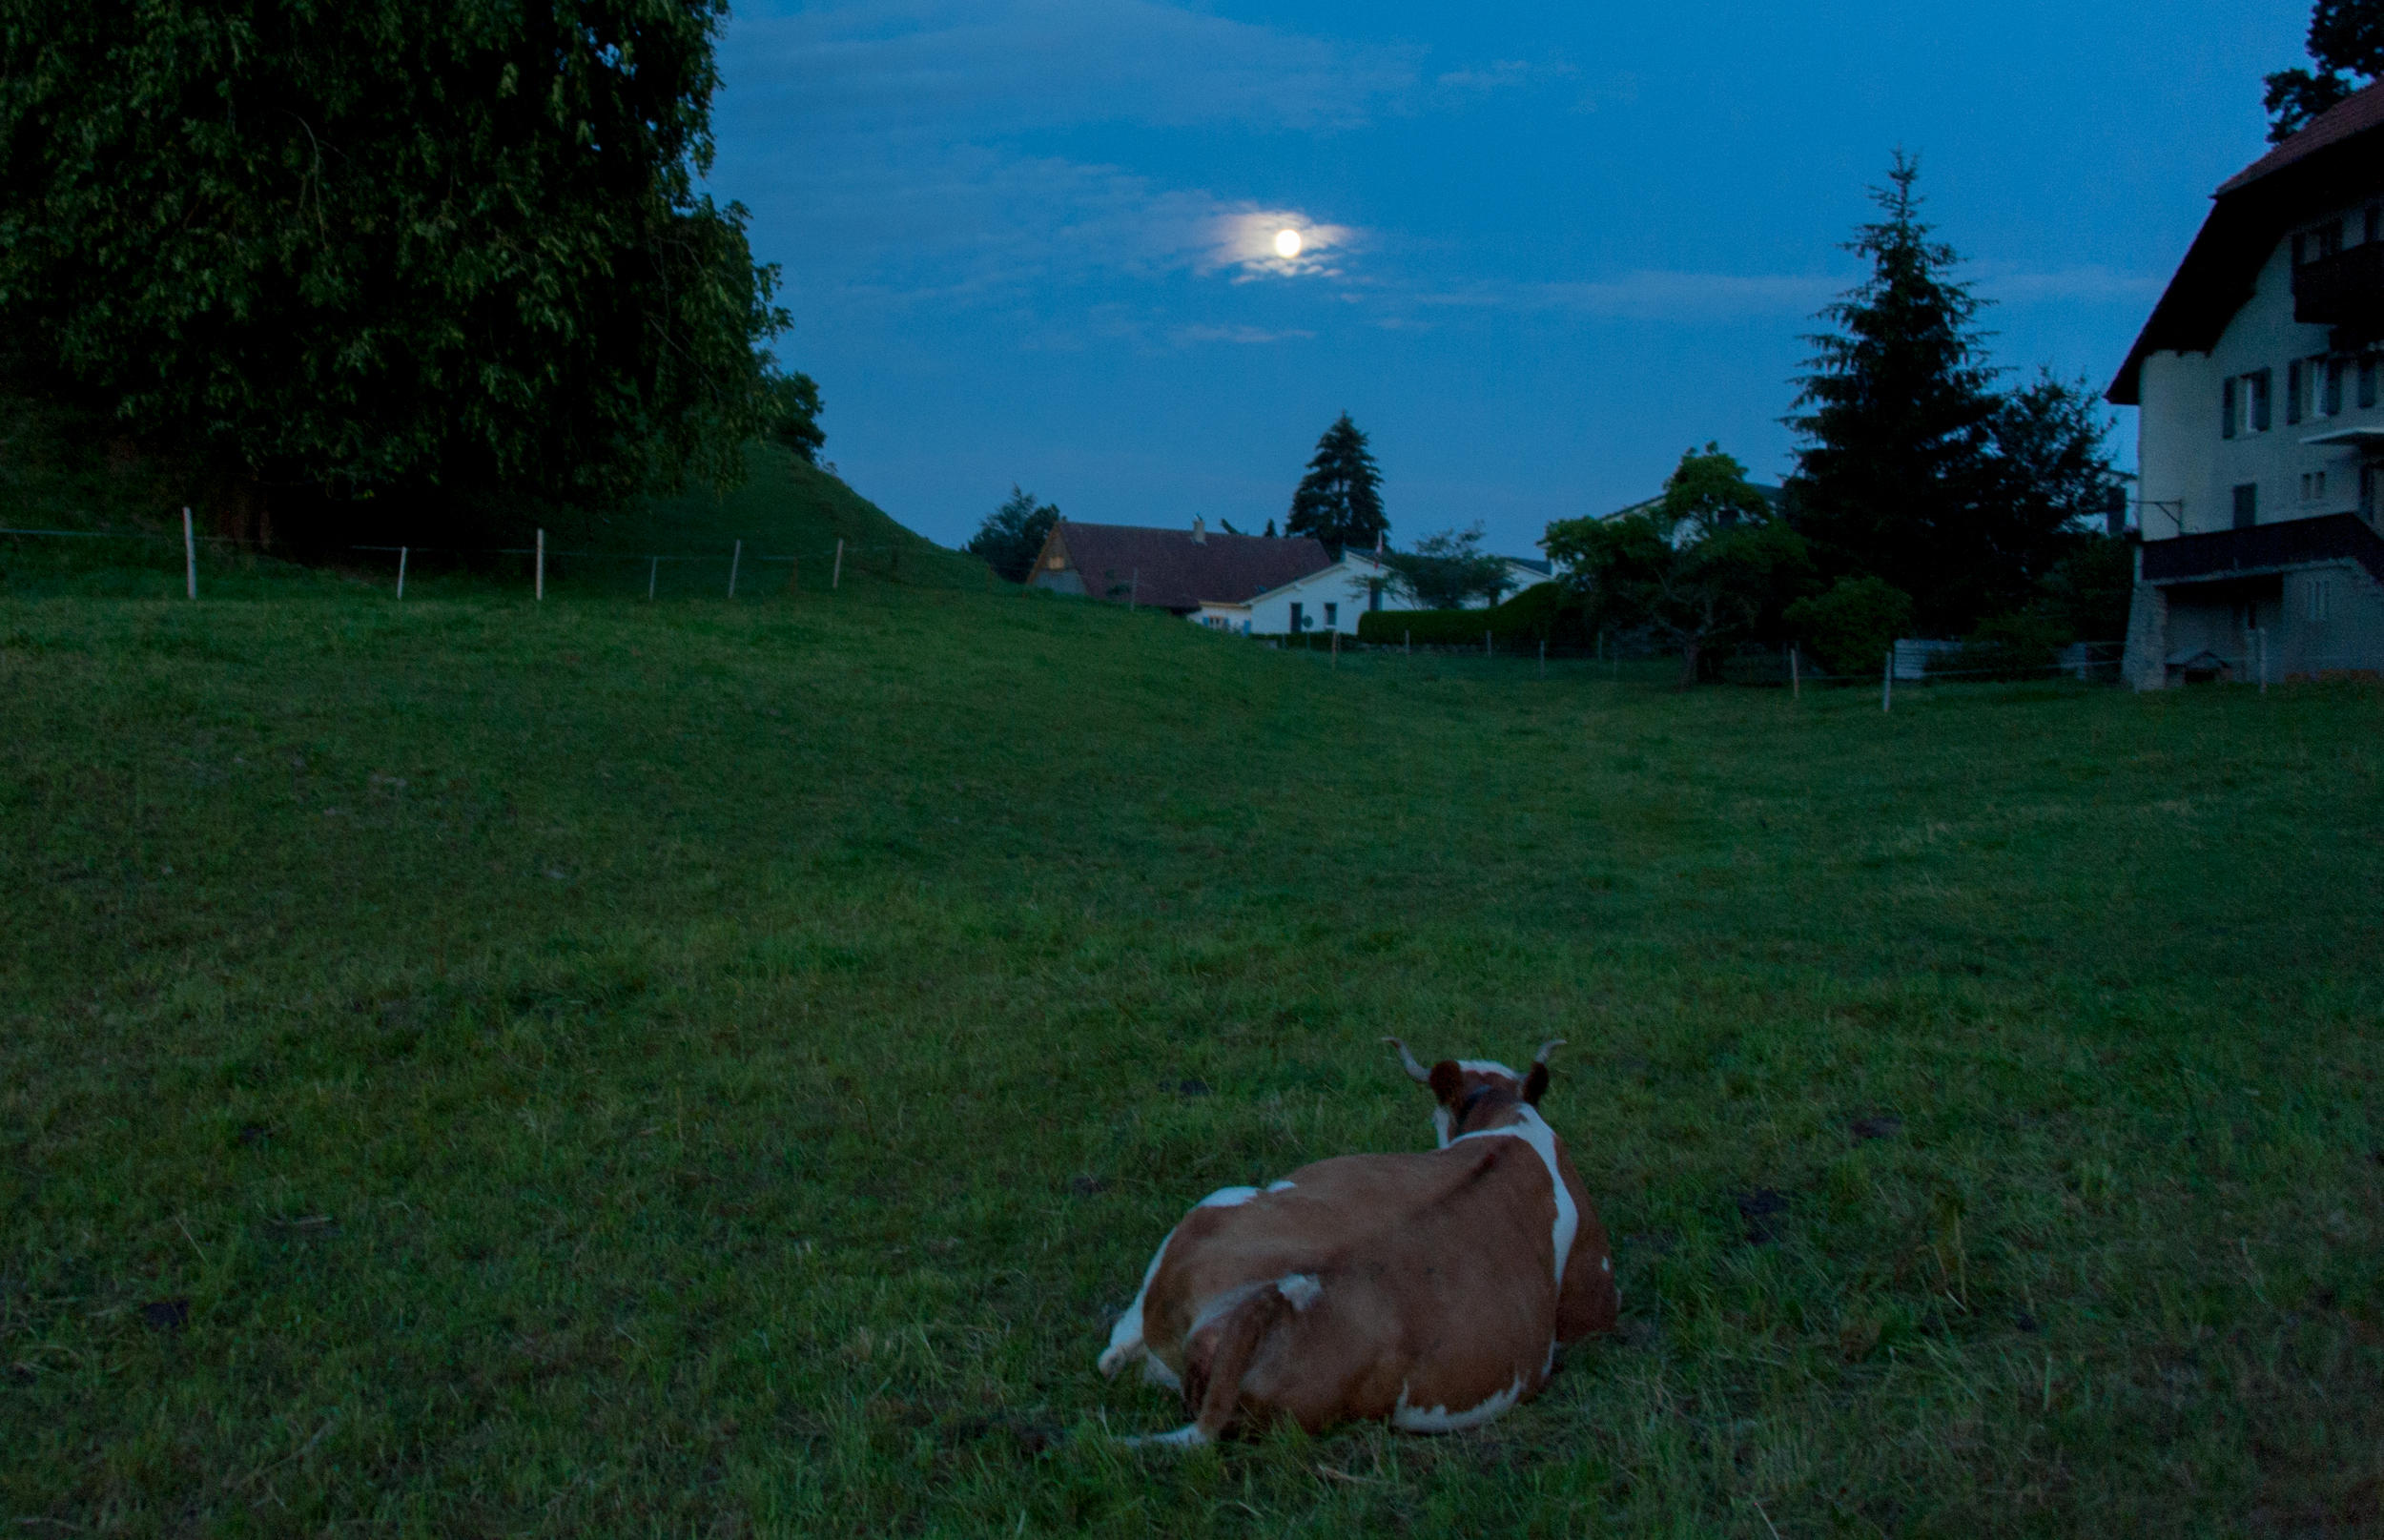 cow in filed, moon still in sky